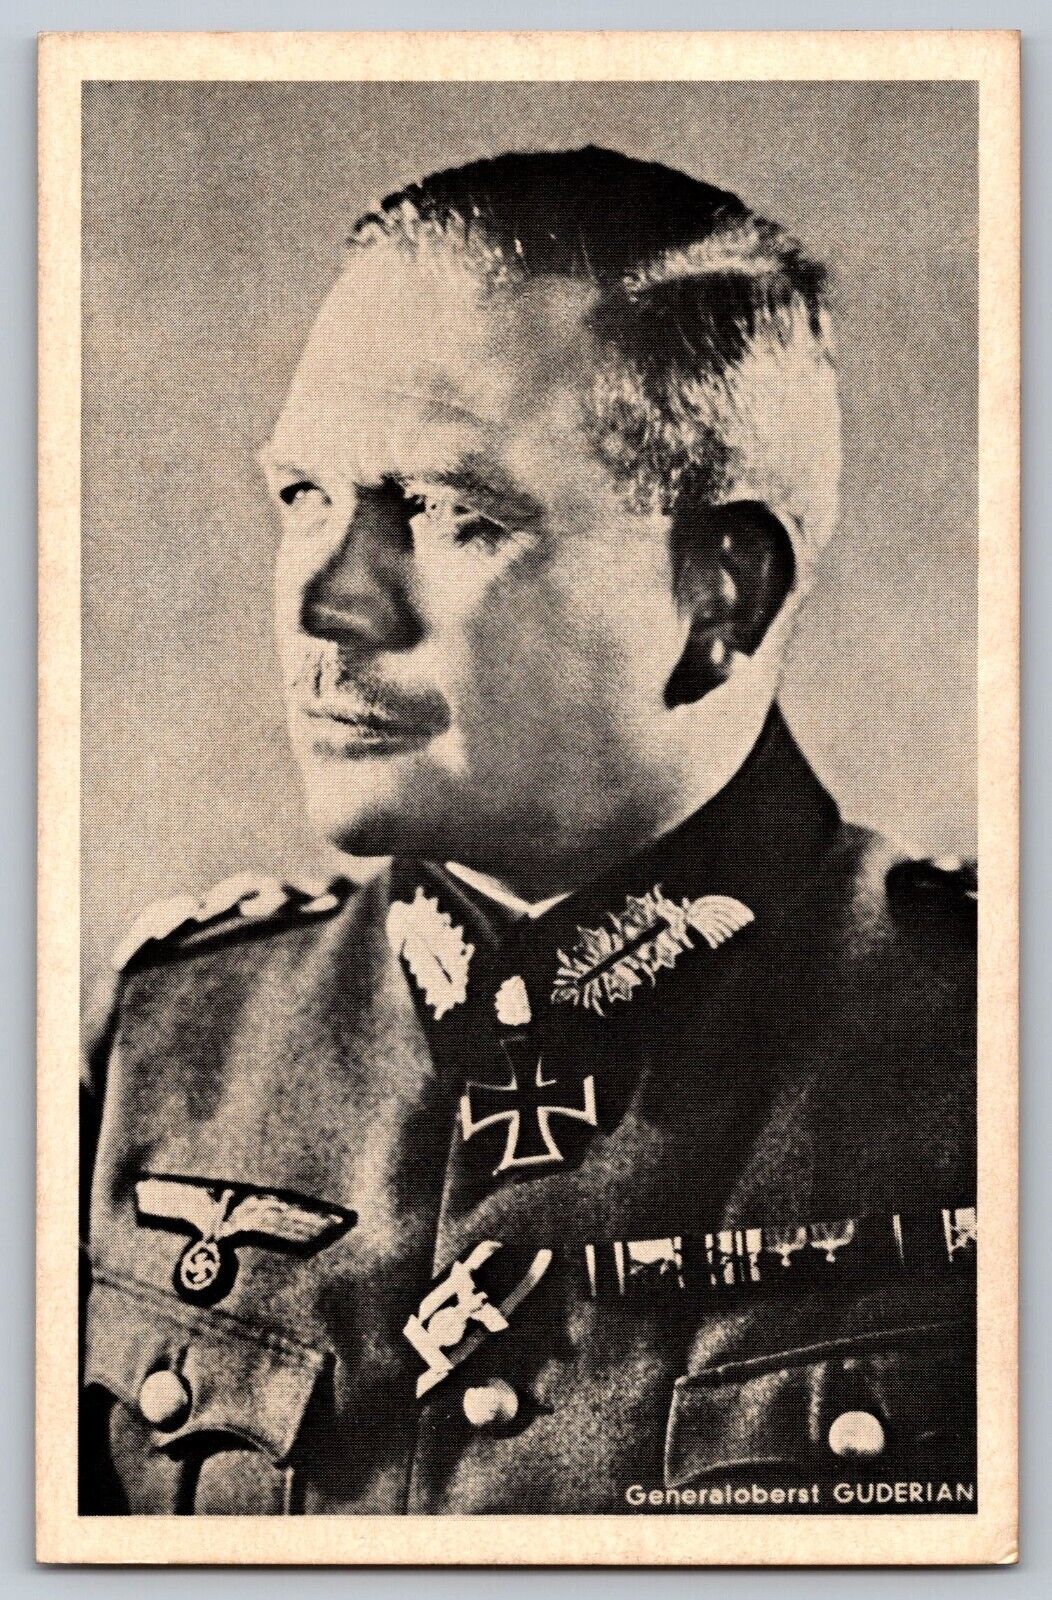 Military WW2 Germany Heinz Wilhelm Guderian Panzer and Blitzkrieg Photo Postcard